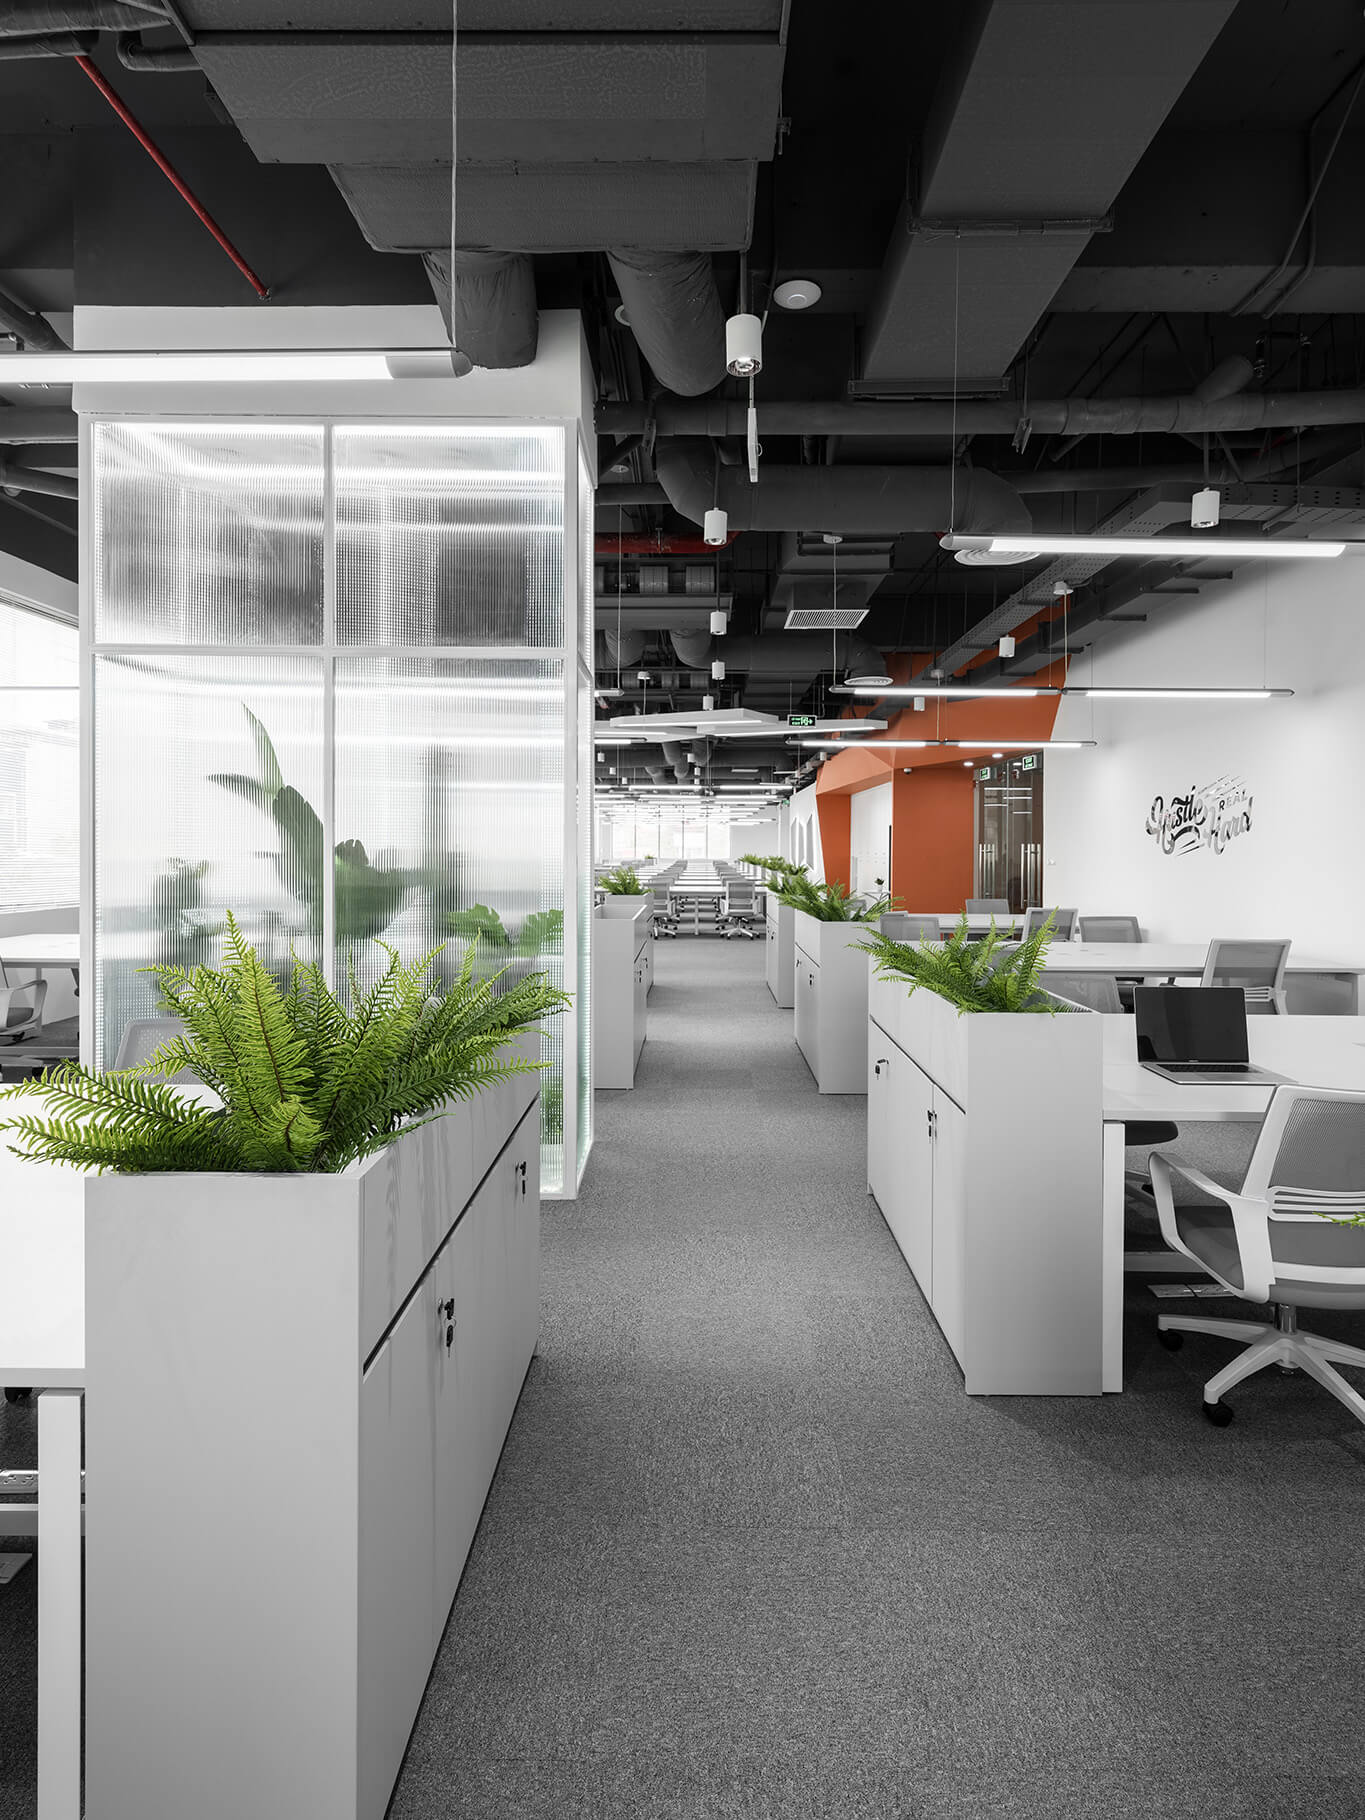 Tiêu chuẩn đánh giá văn phòng xanh khuyến khích các giải pháp kiến trúc dựa vào thiên nhiên